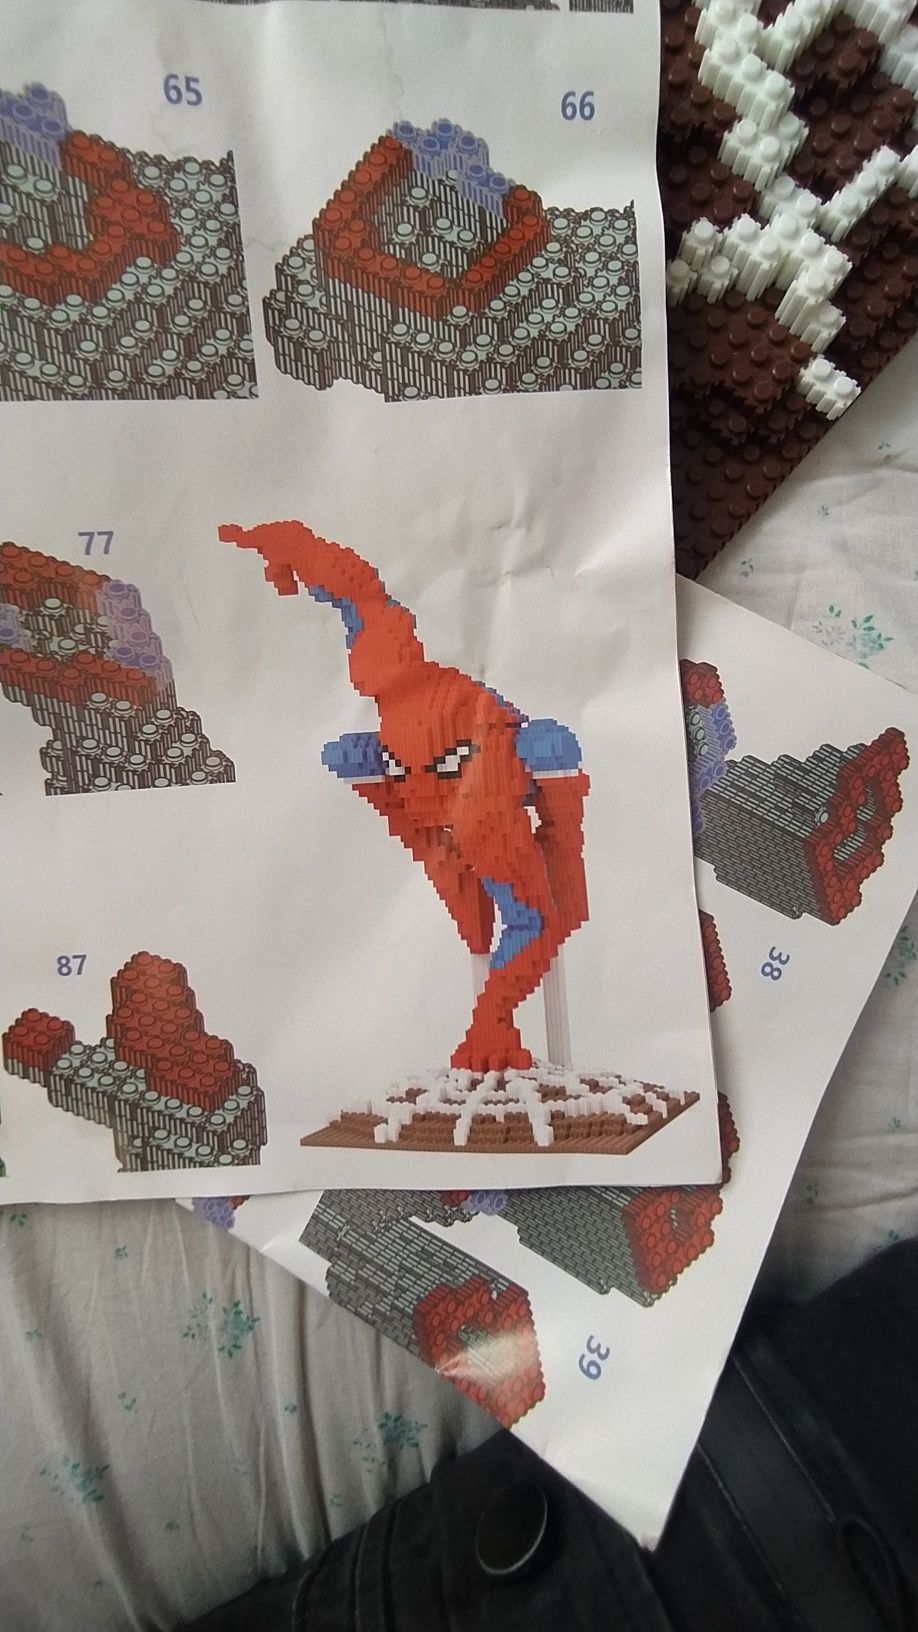 Продам Лего человека паука